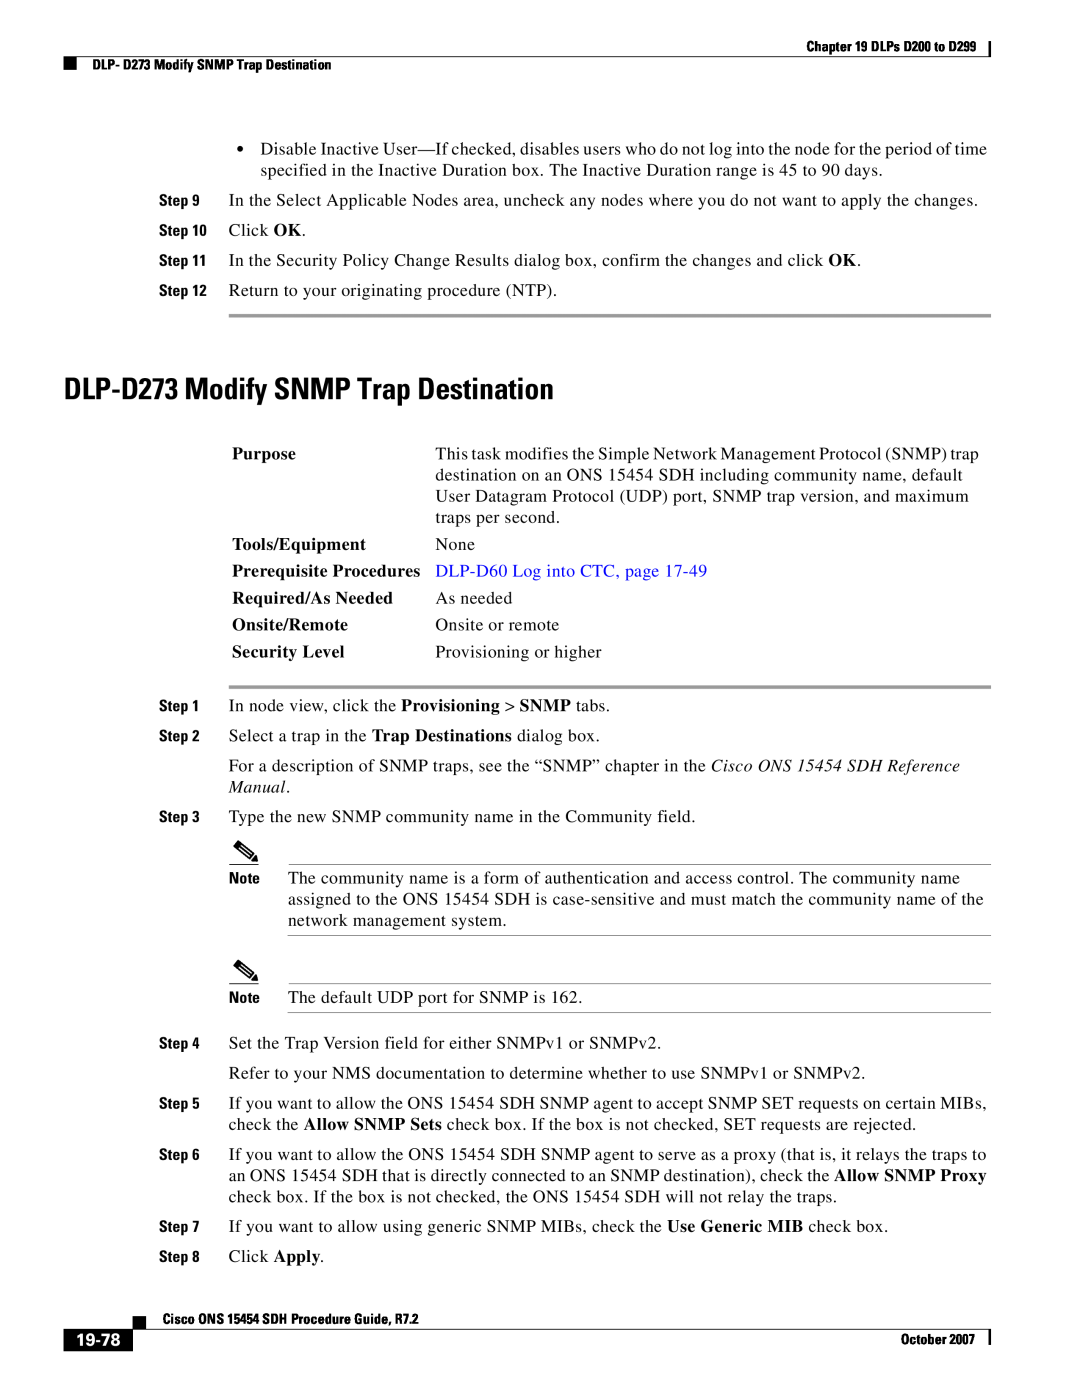 Cisco Systems D200 manual DLP-D273 Modify SNMP Trap Destination, 19-78, DLP-D60 Log into CTC, page, Click OK 